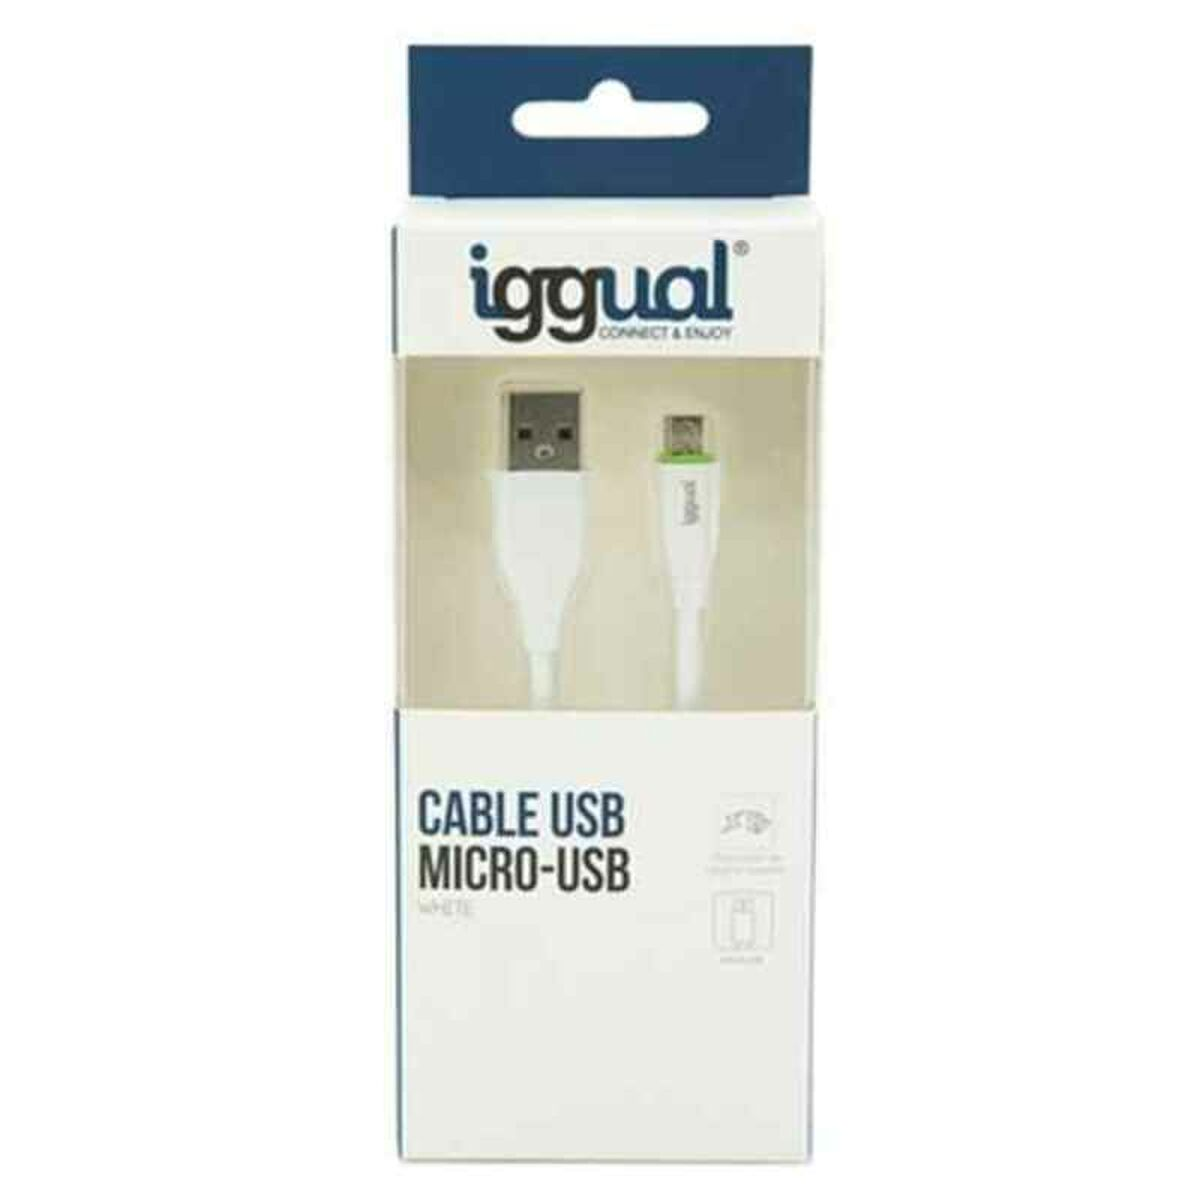 IGGUAL IGG316931 USB-Kabel micro-USB auf